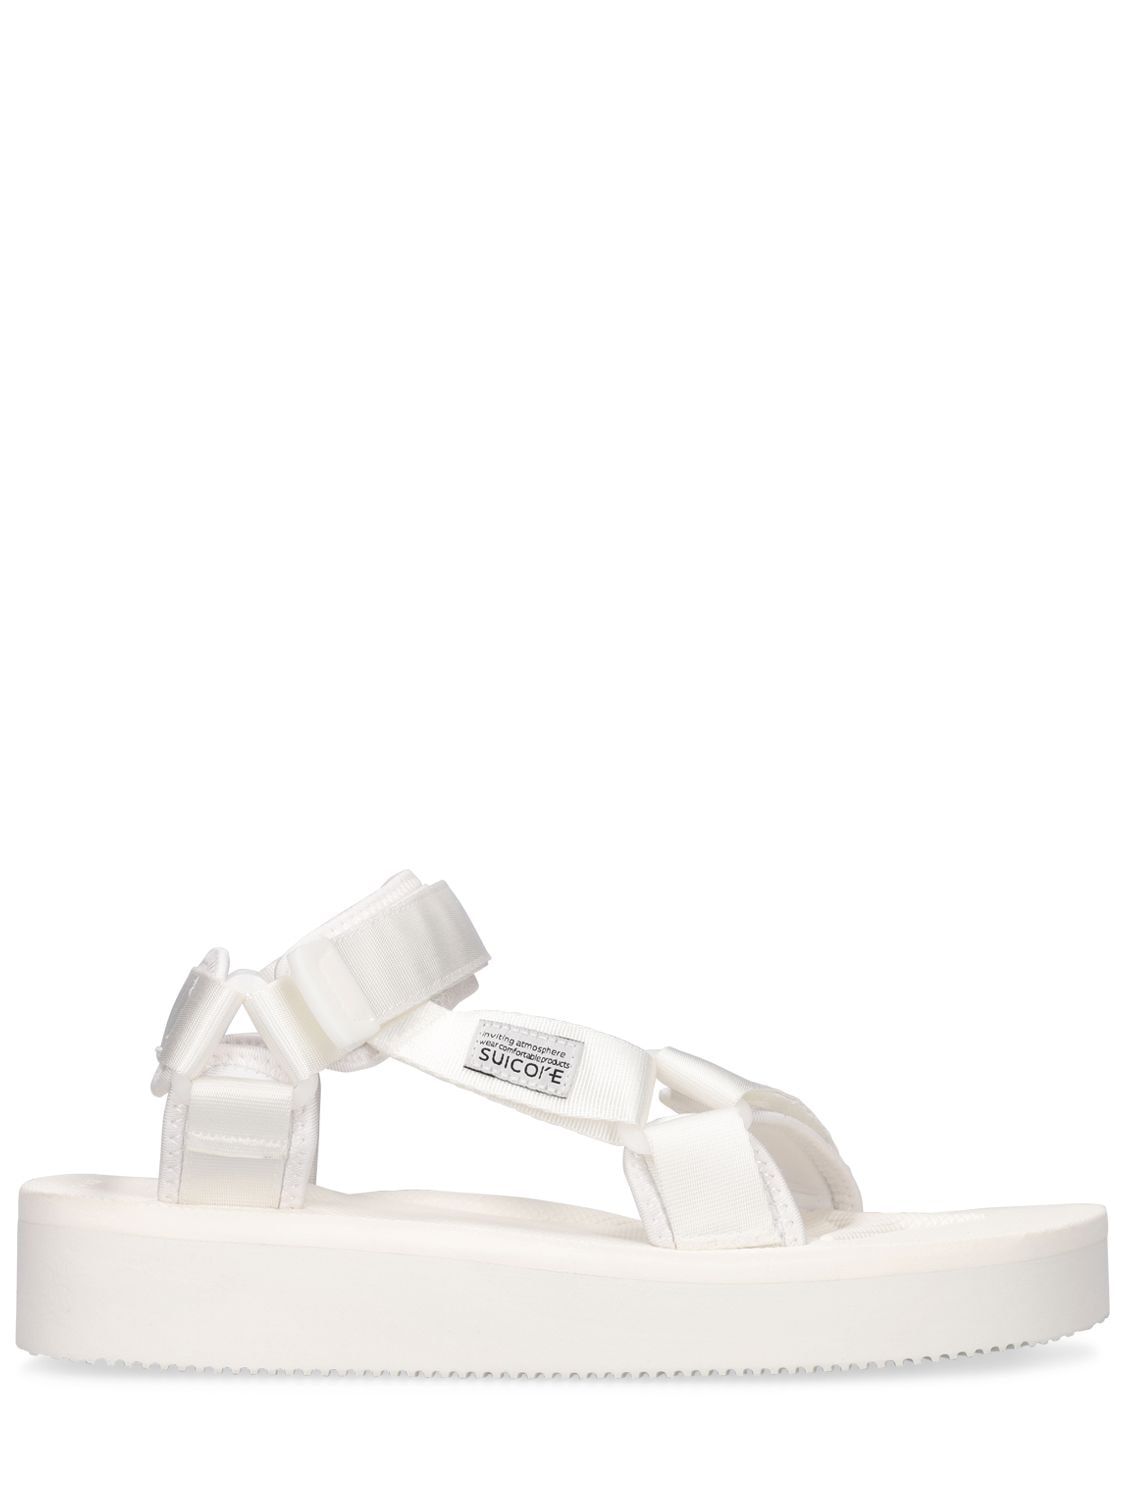 Suicoke Depa 2po Sandals In White